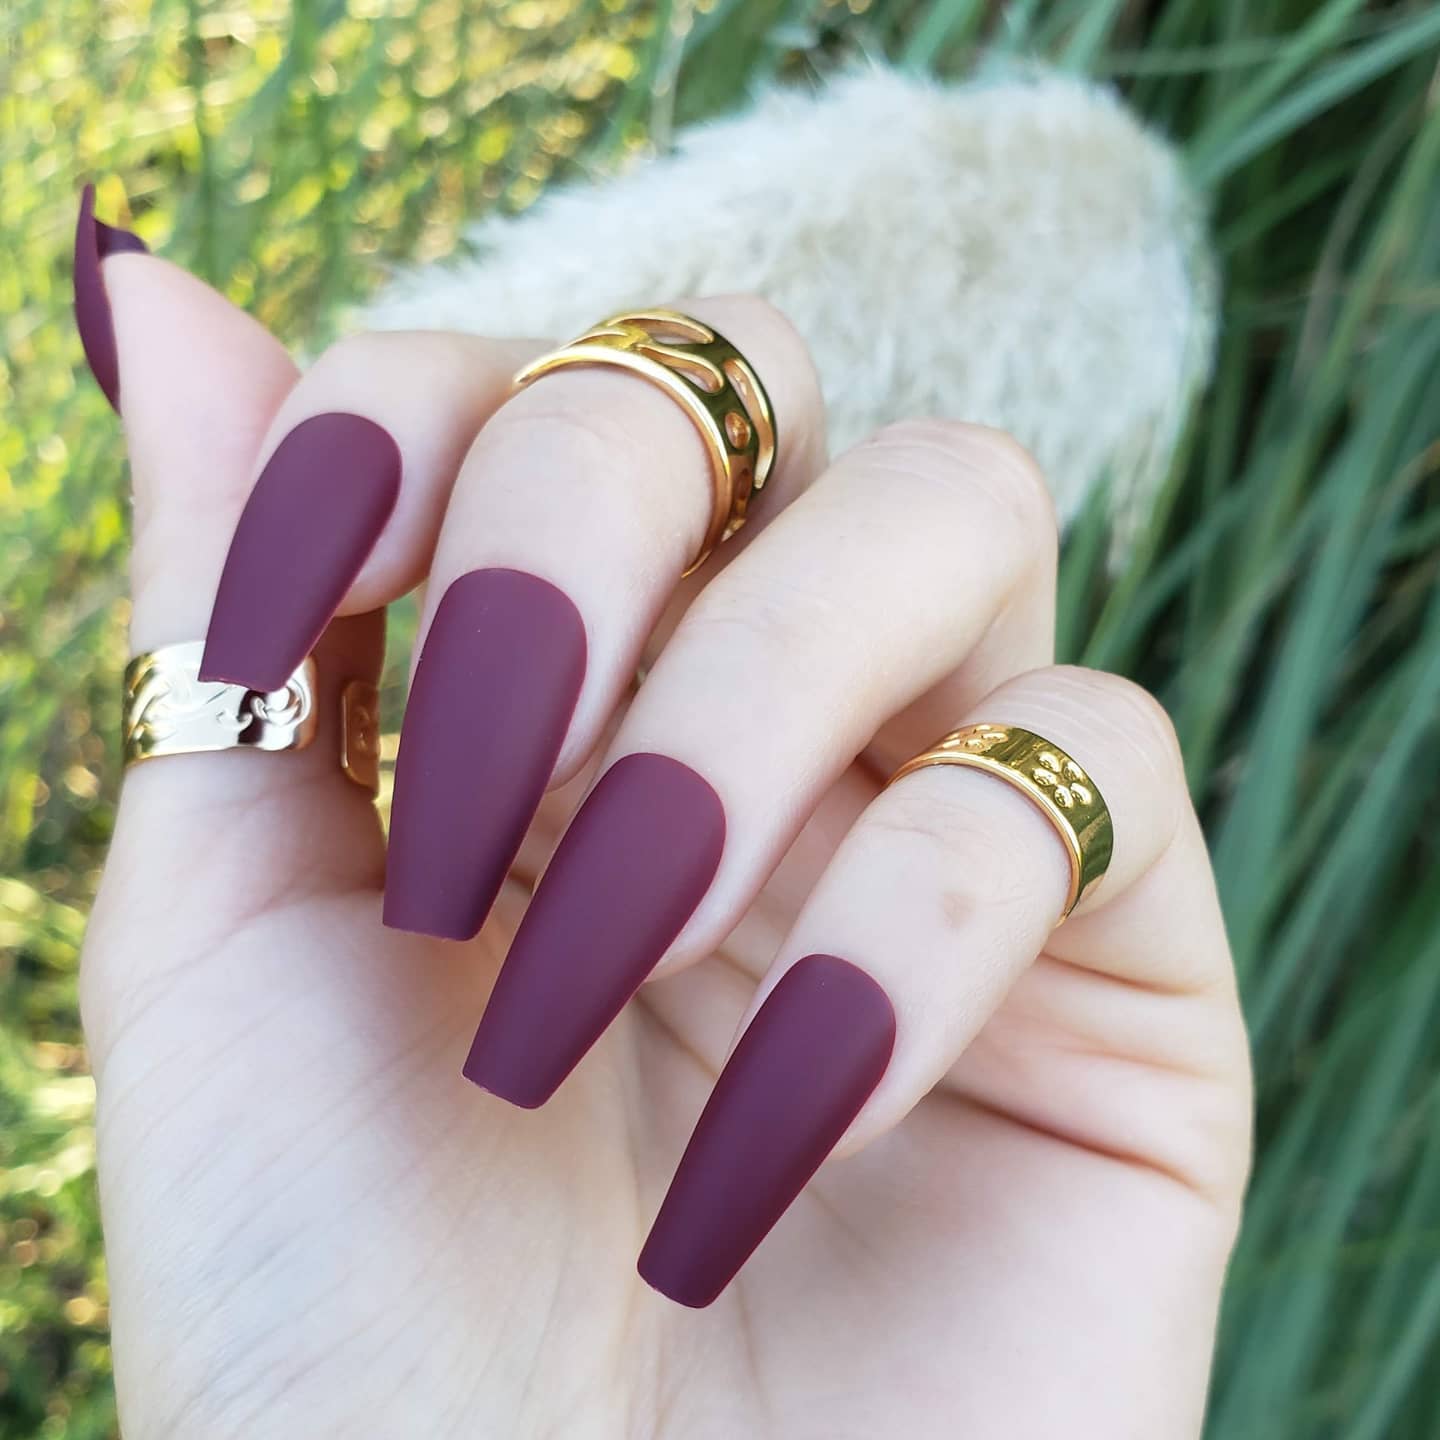 Cute plaid nail designs for autumn 2021 : Tartan Matte Burgundy Nails